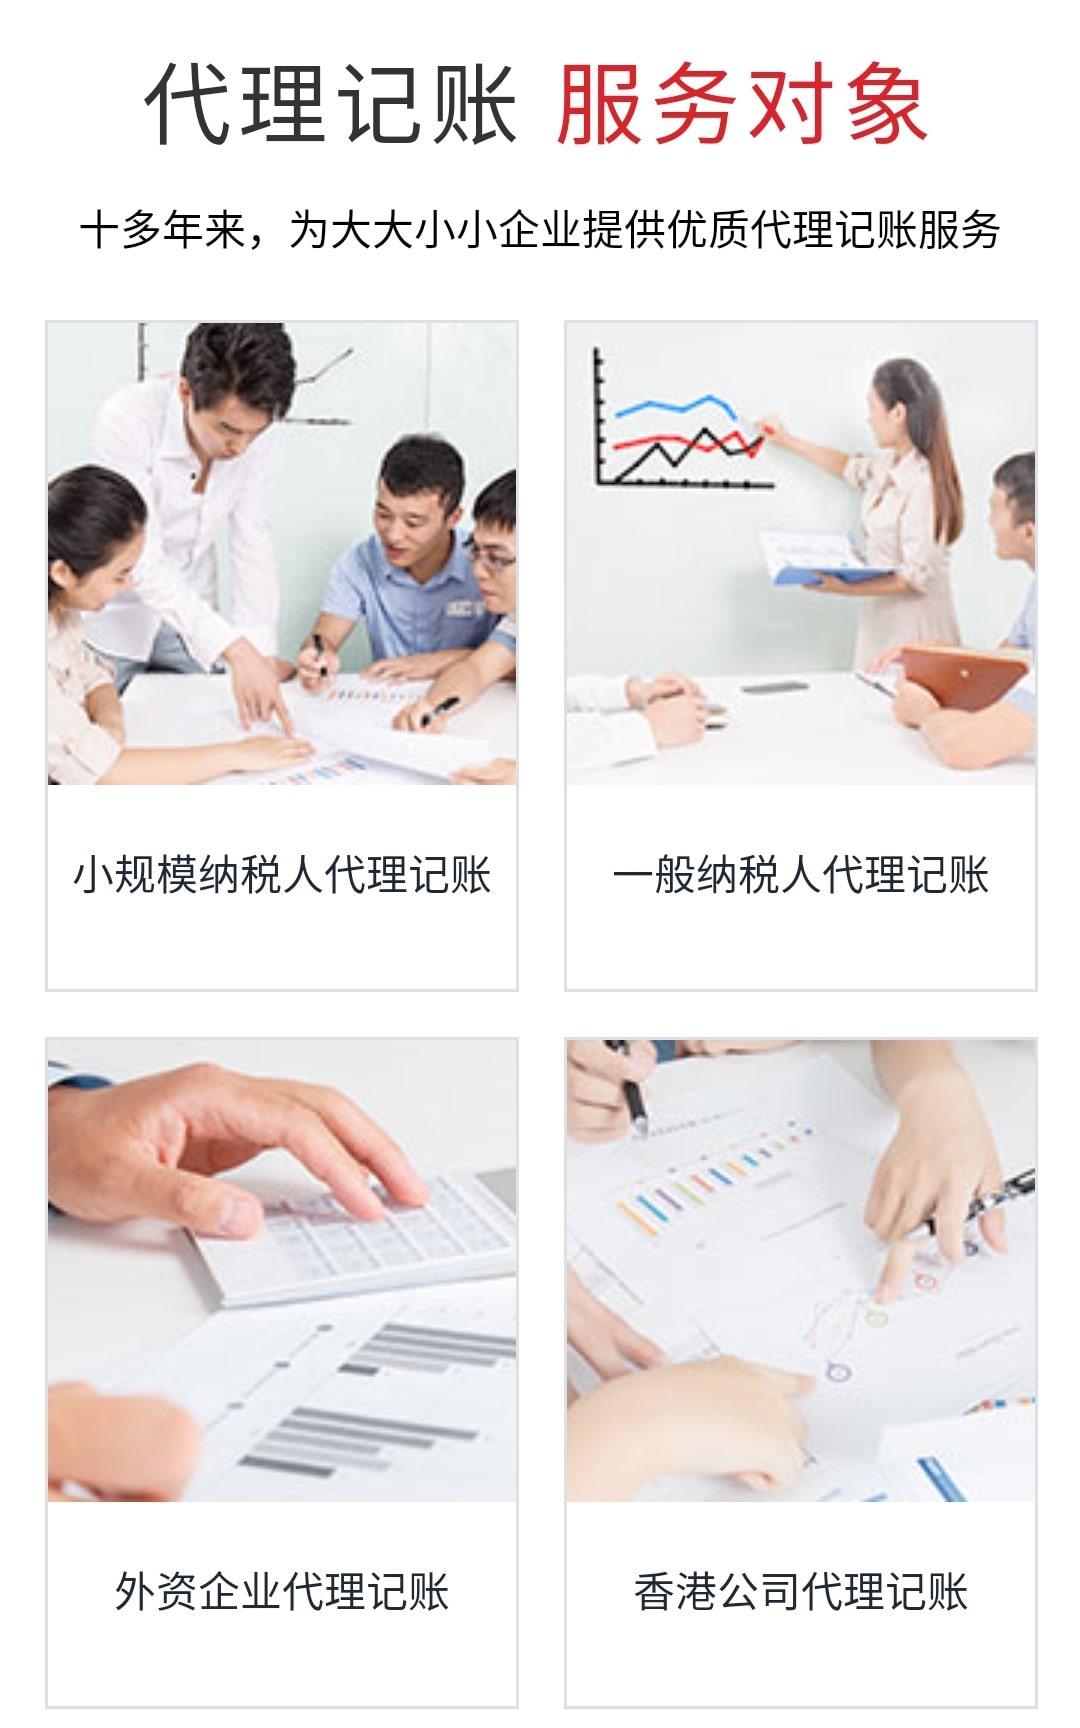 小规模代理记账、一般纳税人代理记账、外资企业代理记账、香港公司代理记账